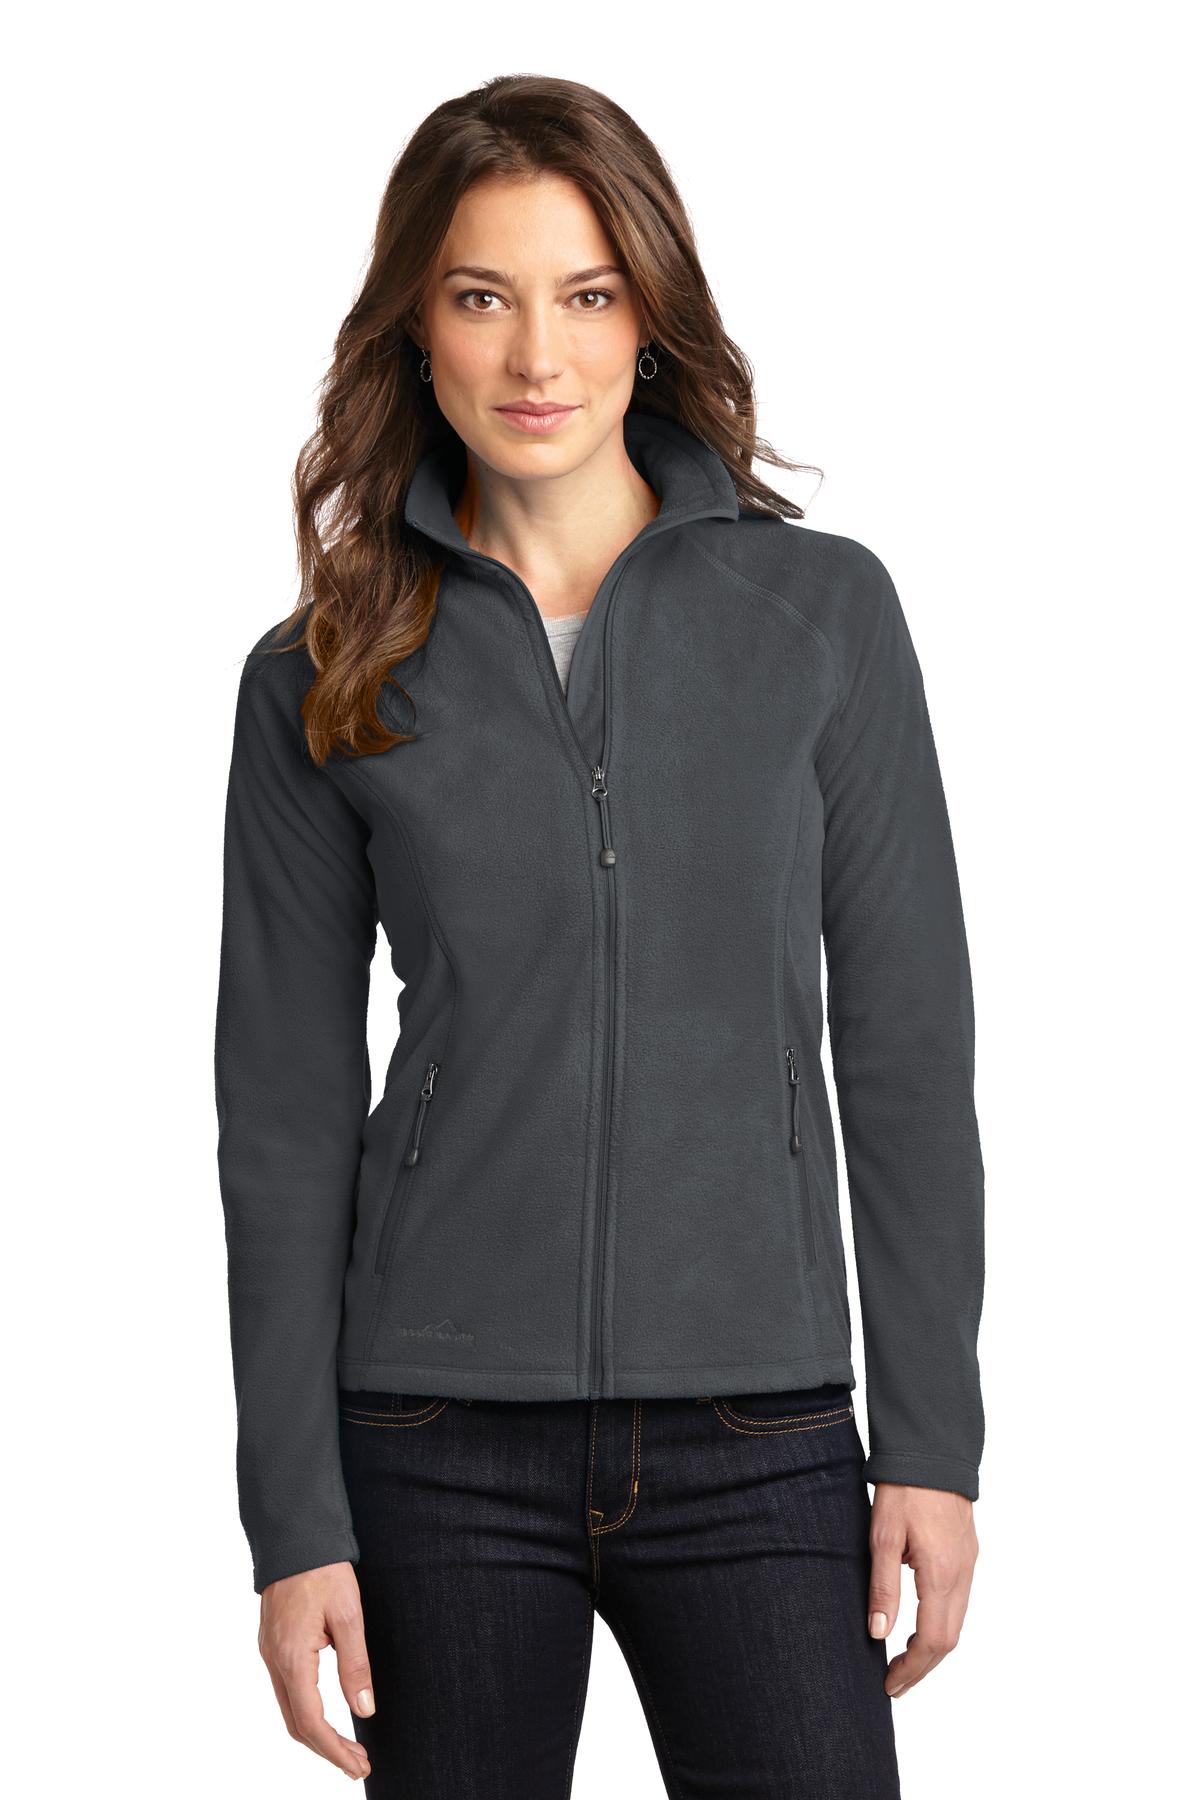 Eddie Bauer® Ladies Full-Zip Microfleece Jacket. EB225